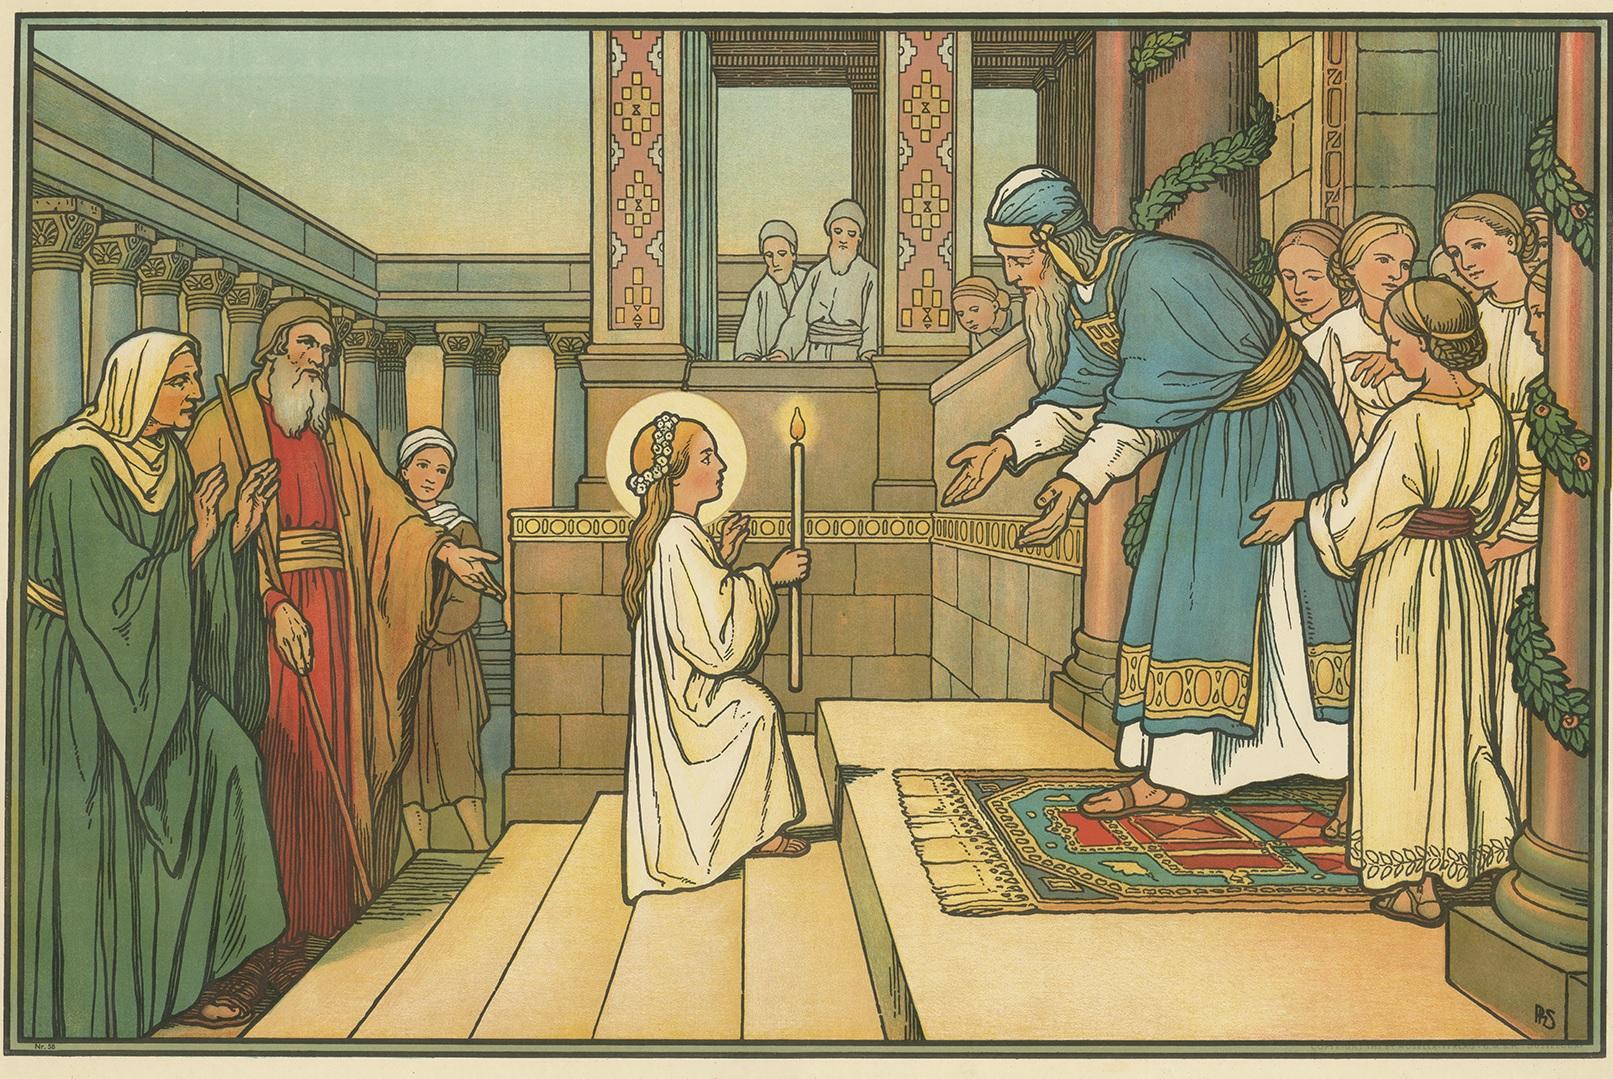 Grande impression ancienne de la présentation de Marie. Publié par Mosella-Verlag, 1913. Ce tirage est issu d'une série intitulée 